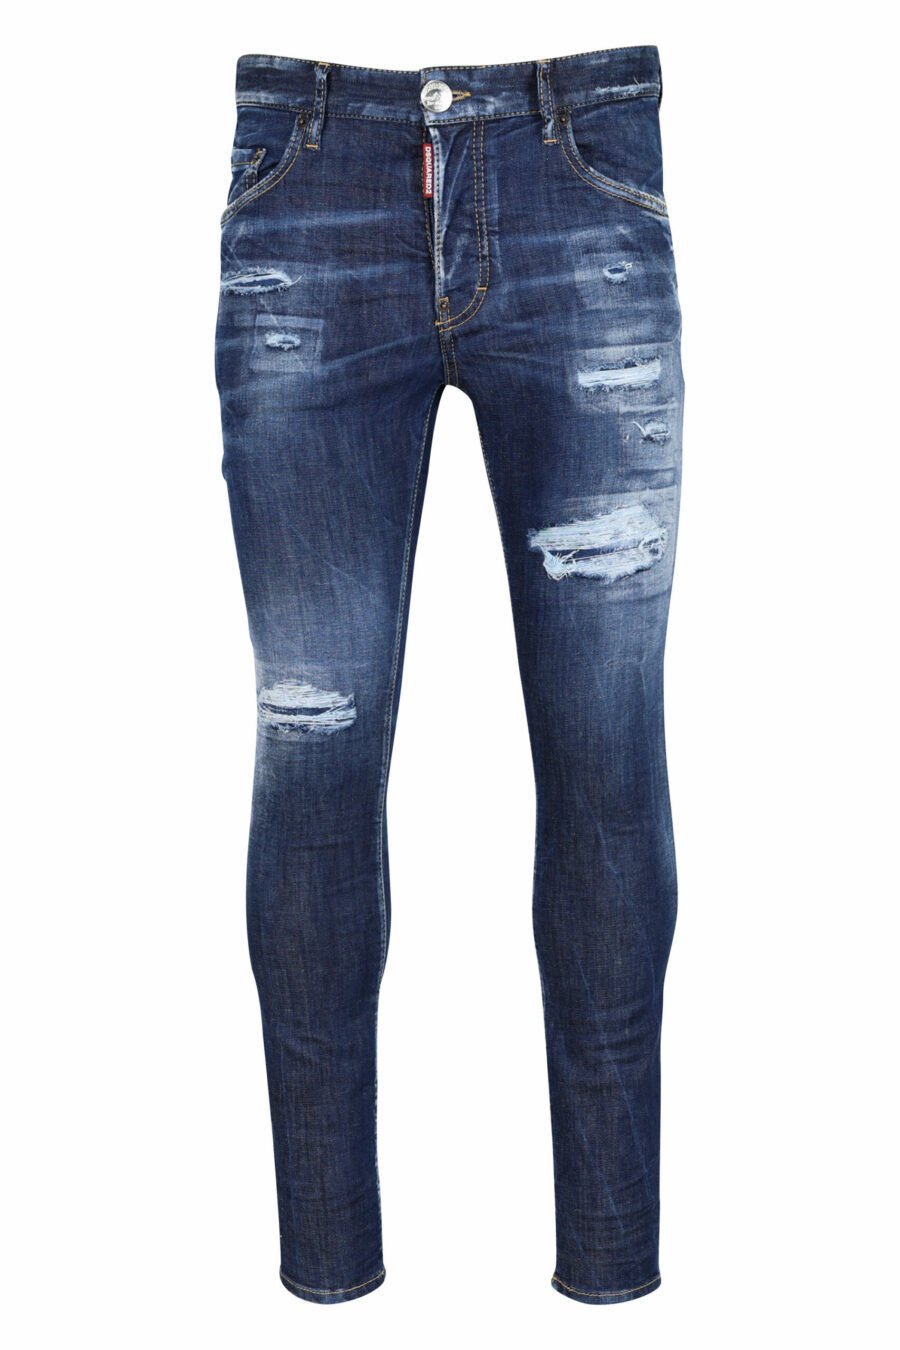 Calças de ganga azuis "super twinky jean" com rasgões e desgastadas - 8054148106201